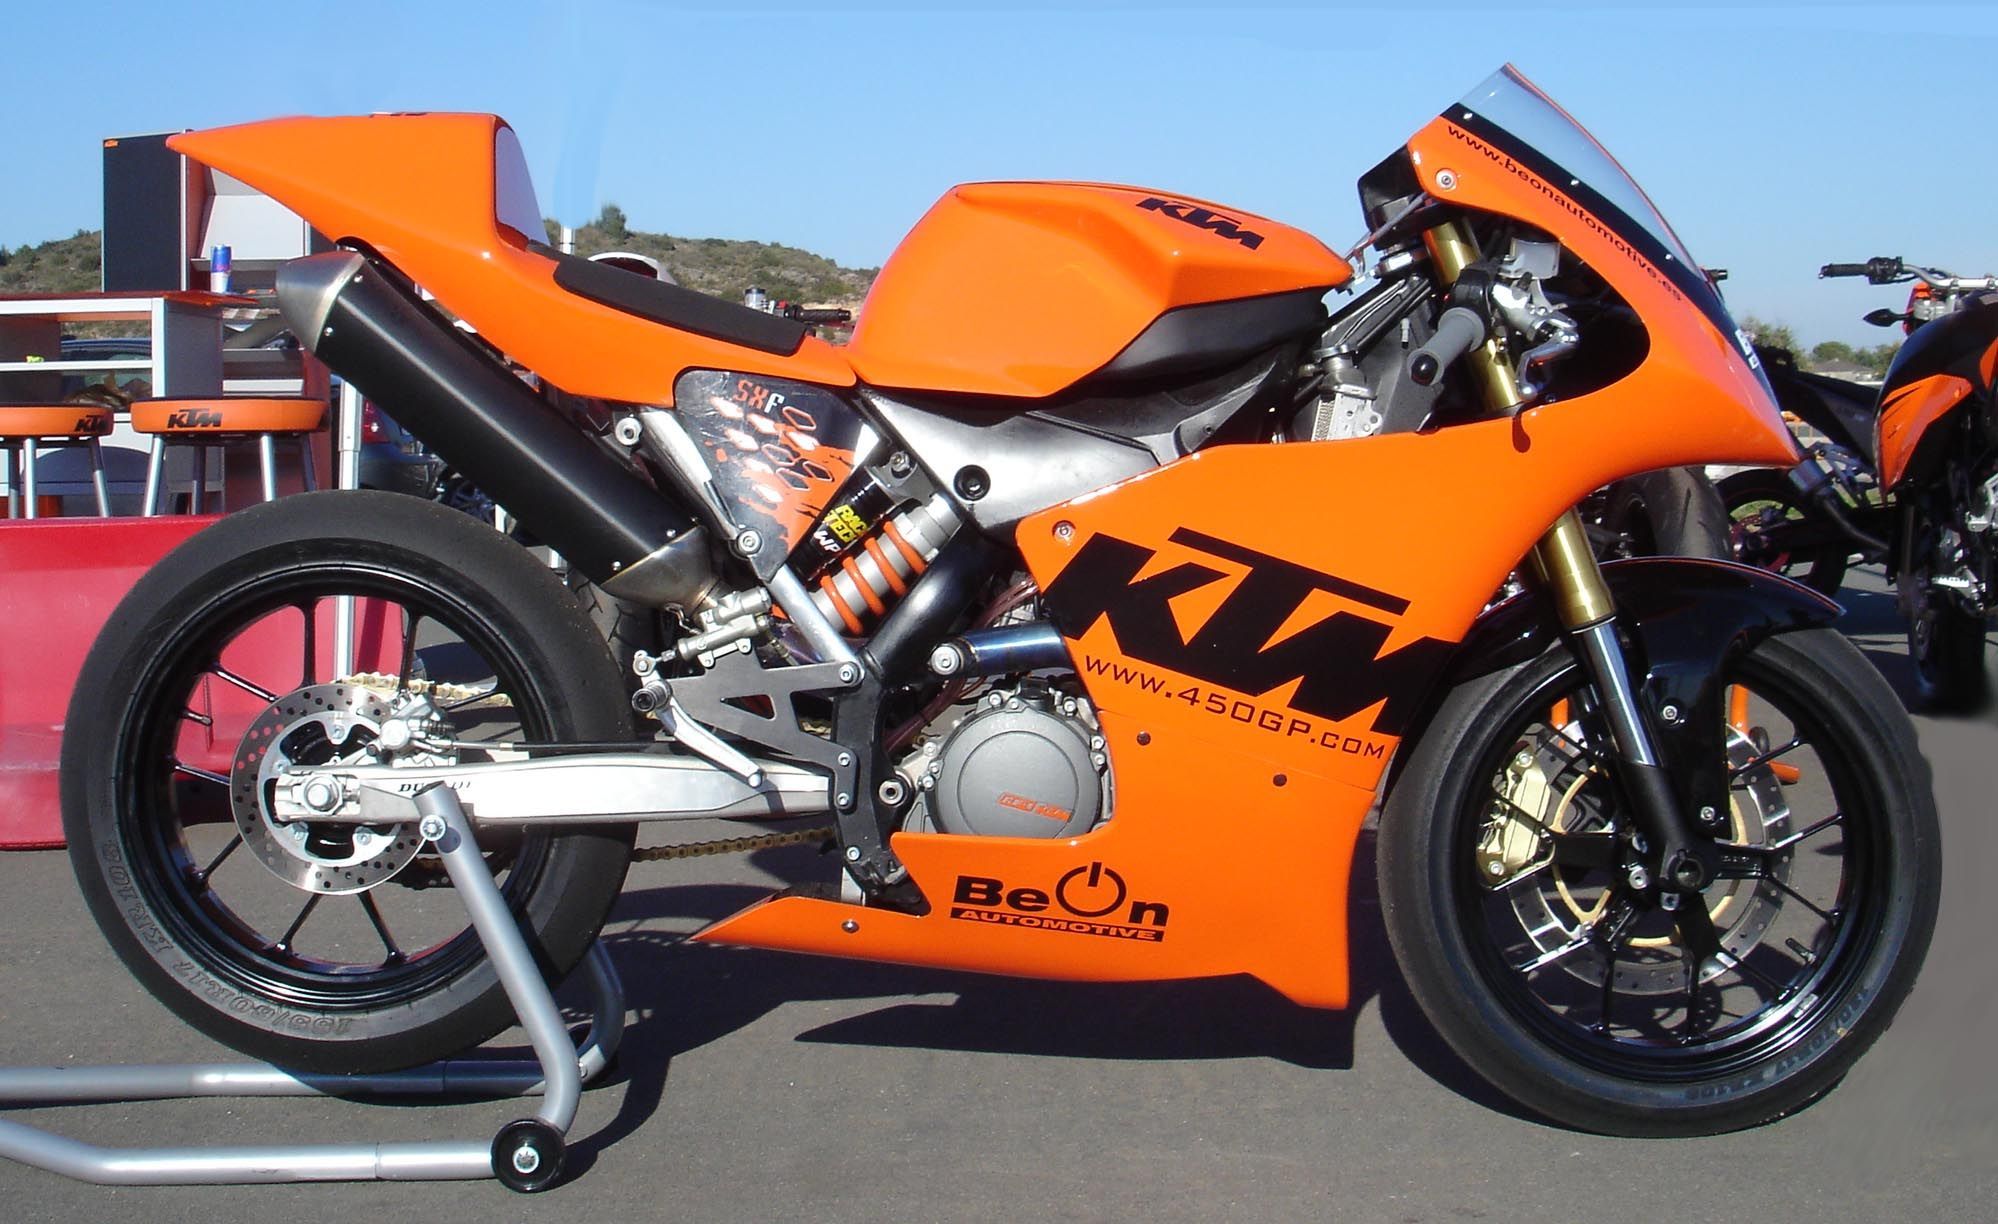 BeOn 450 GP SuperSingle Kit on a KTM motorcycle